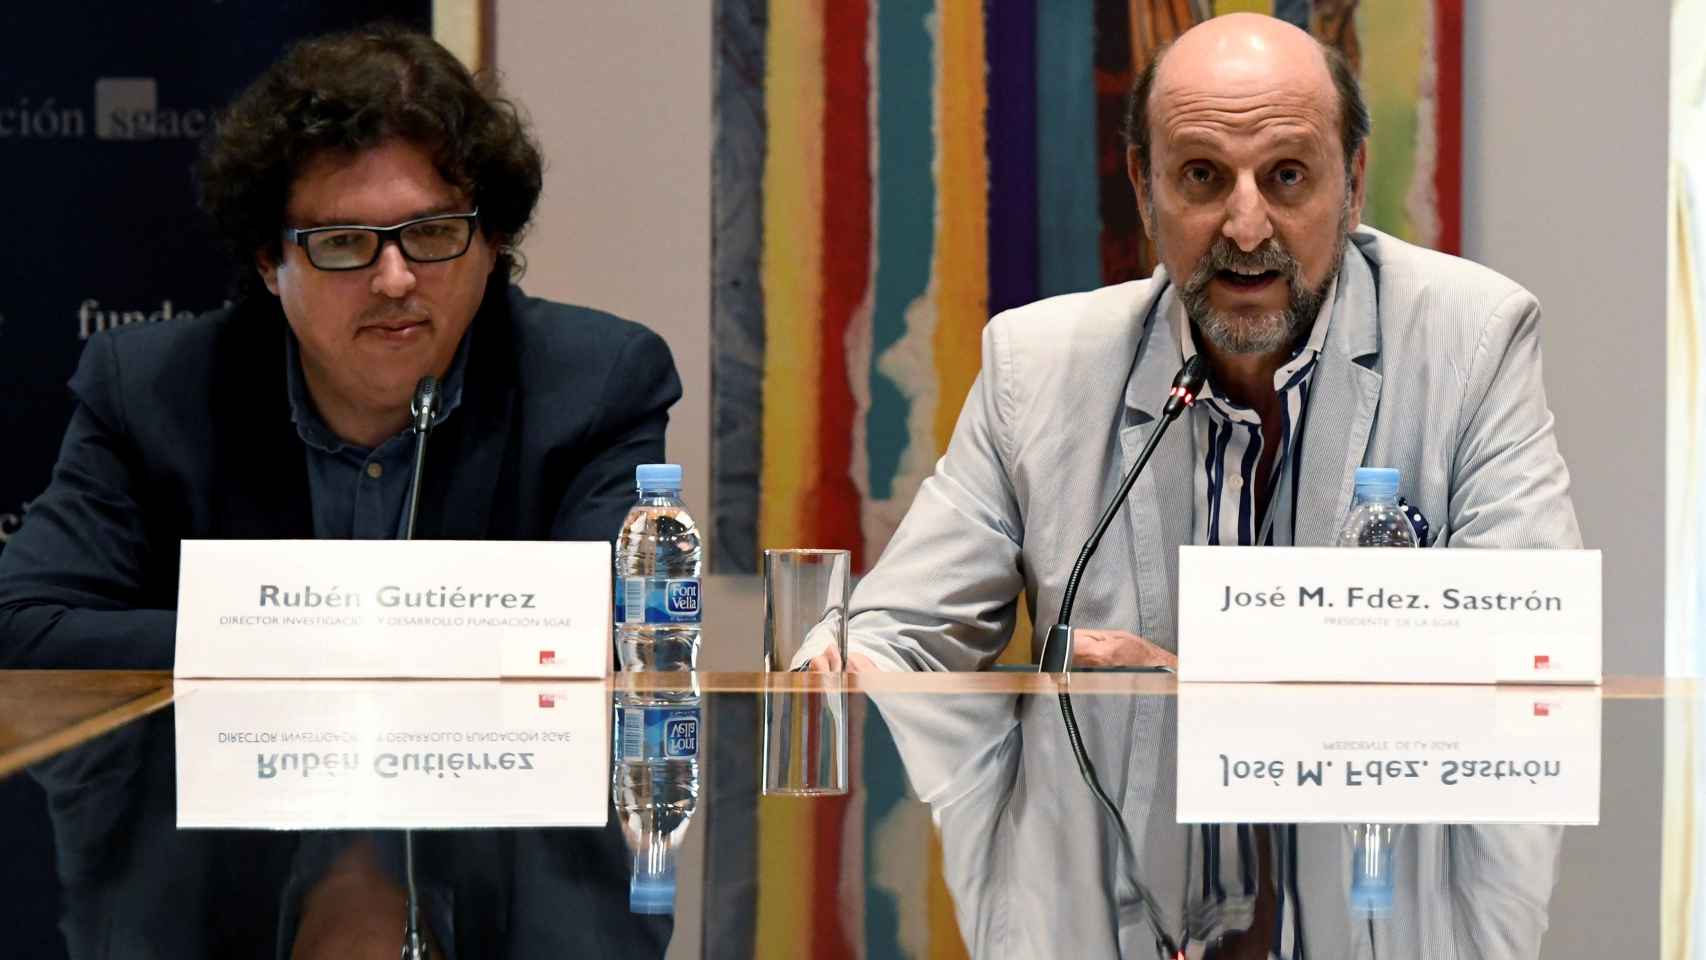 El presidente de la SGAE José Miguel Fernández Sastrón (d), y el director de Investigación de la SGAE Rubén Gutiérrez, durante la presentación del Anuario SGAE.